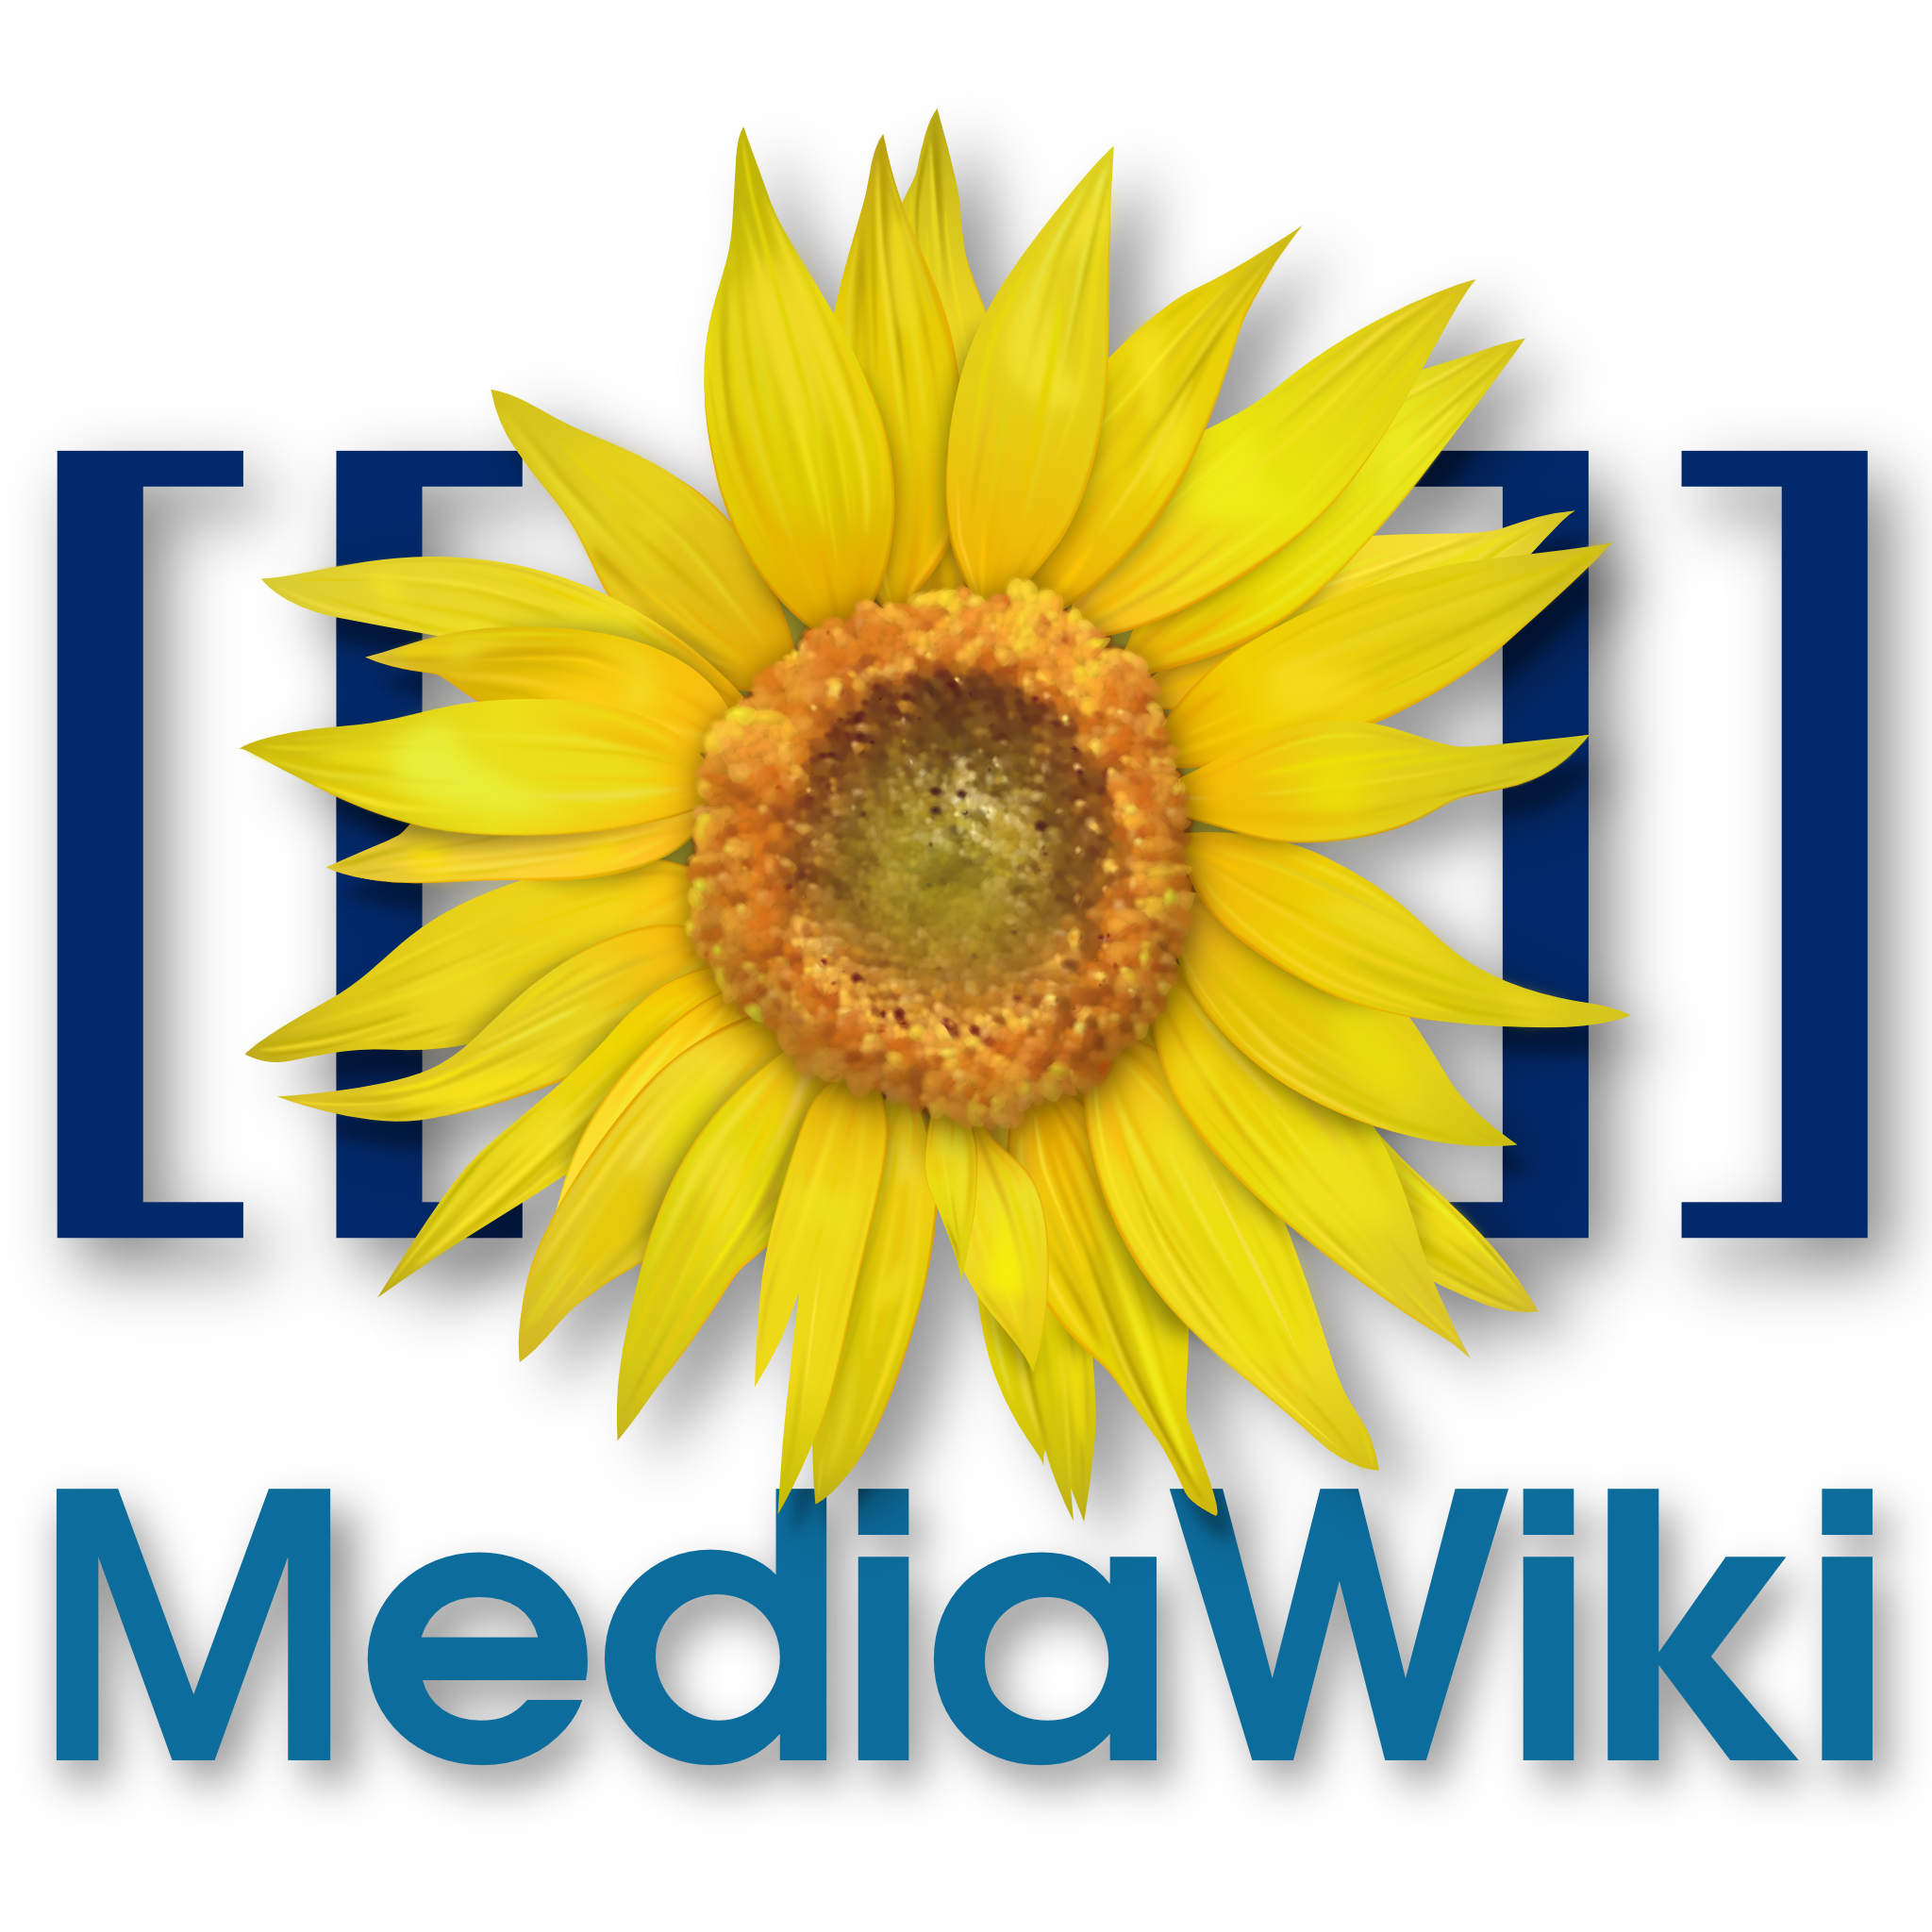 Mediawiki-logo.png